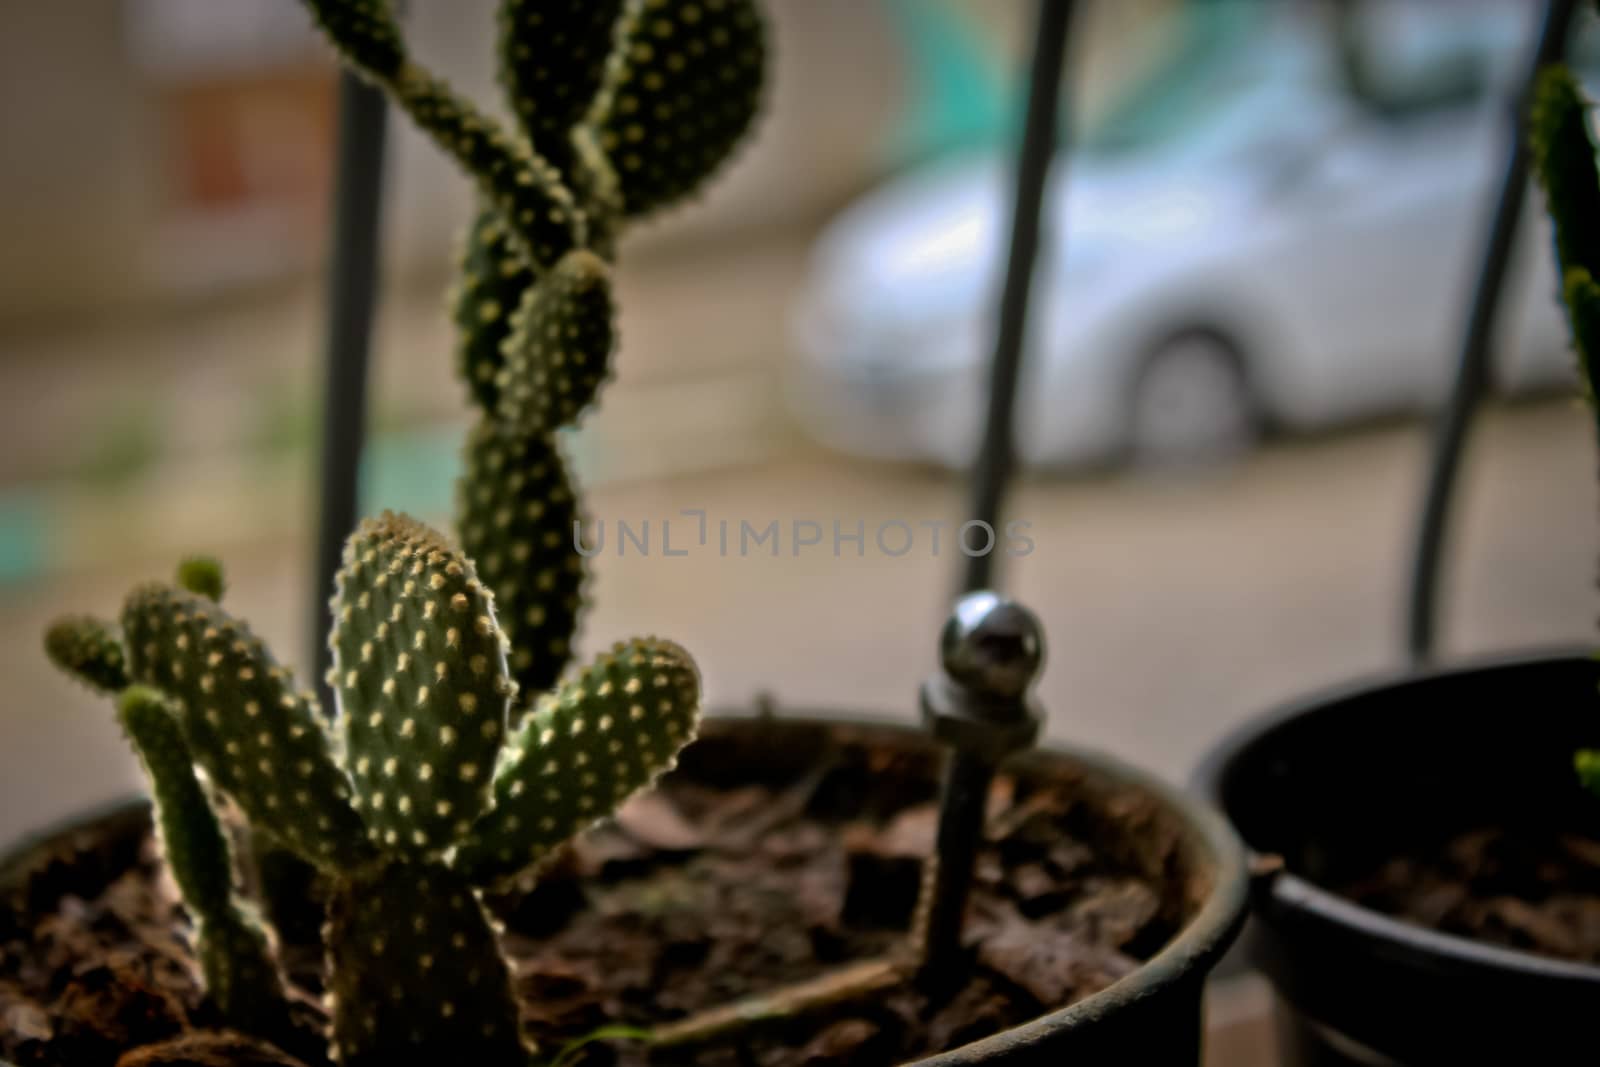 Cactus in a plantpot